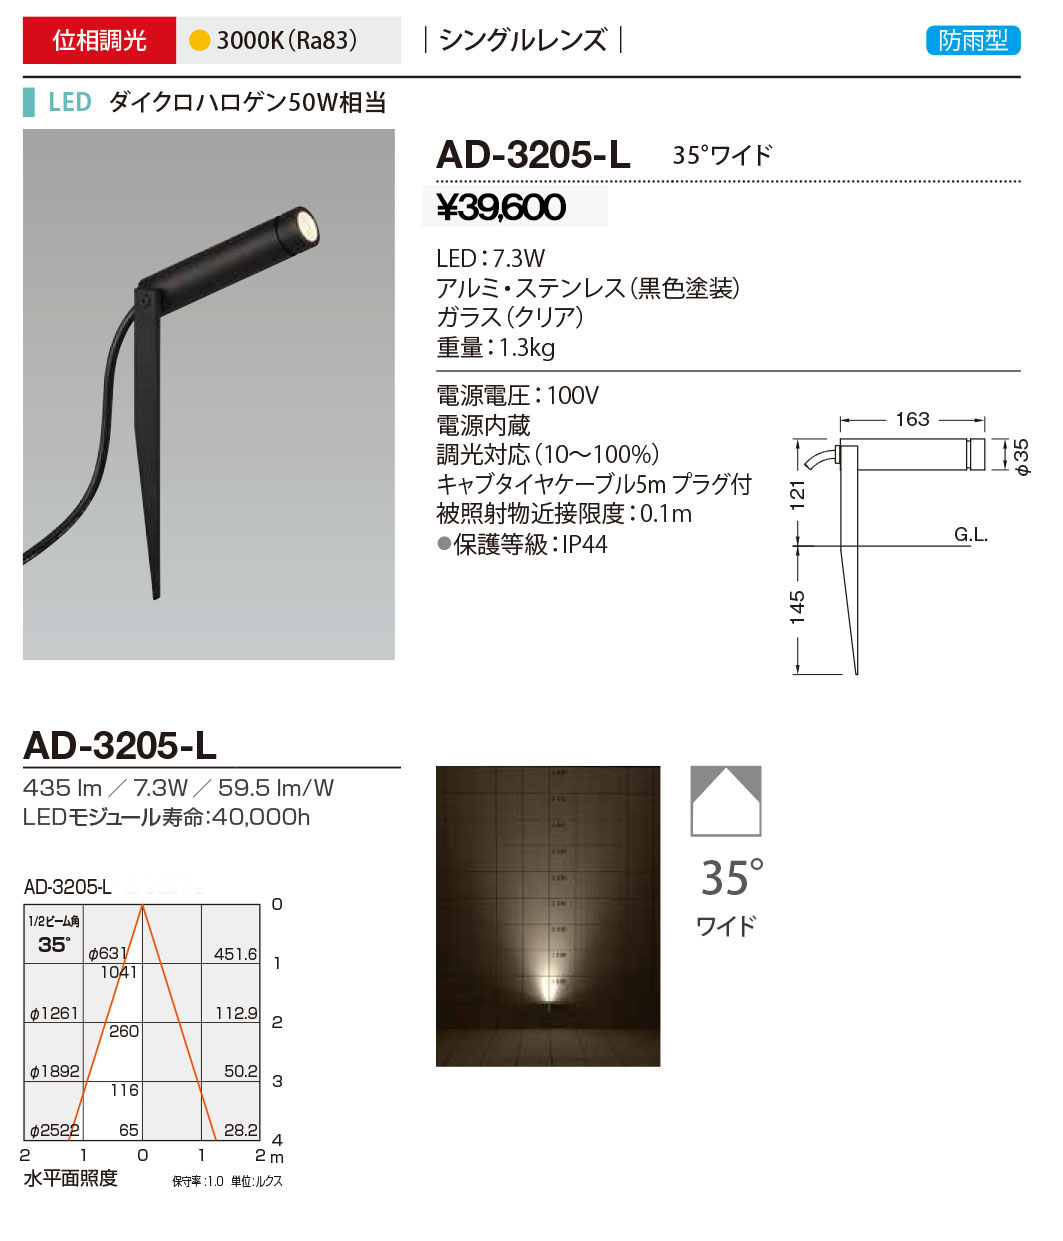 山田照明 AD-3205-L 山田照明 屋外スポットライト 黒色 LED 電球色 調光 35度